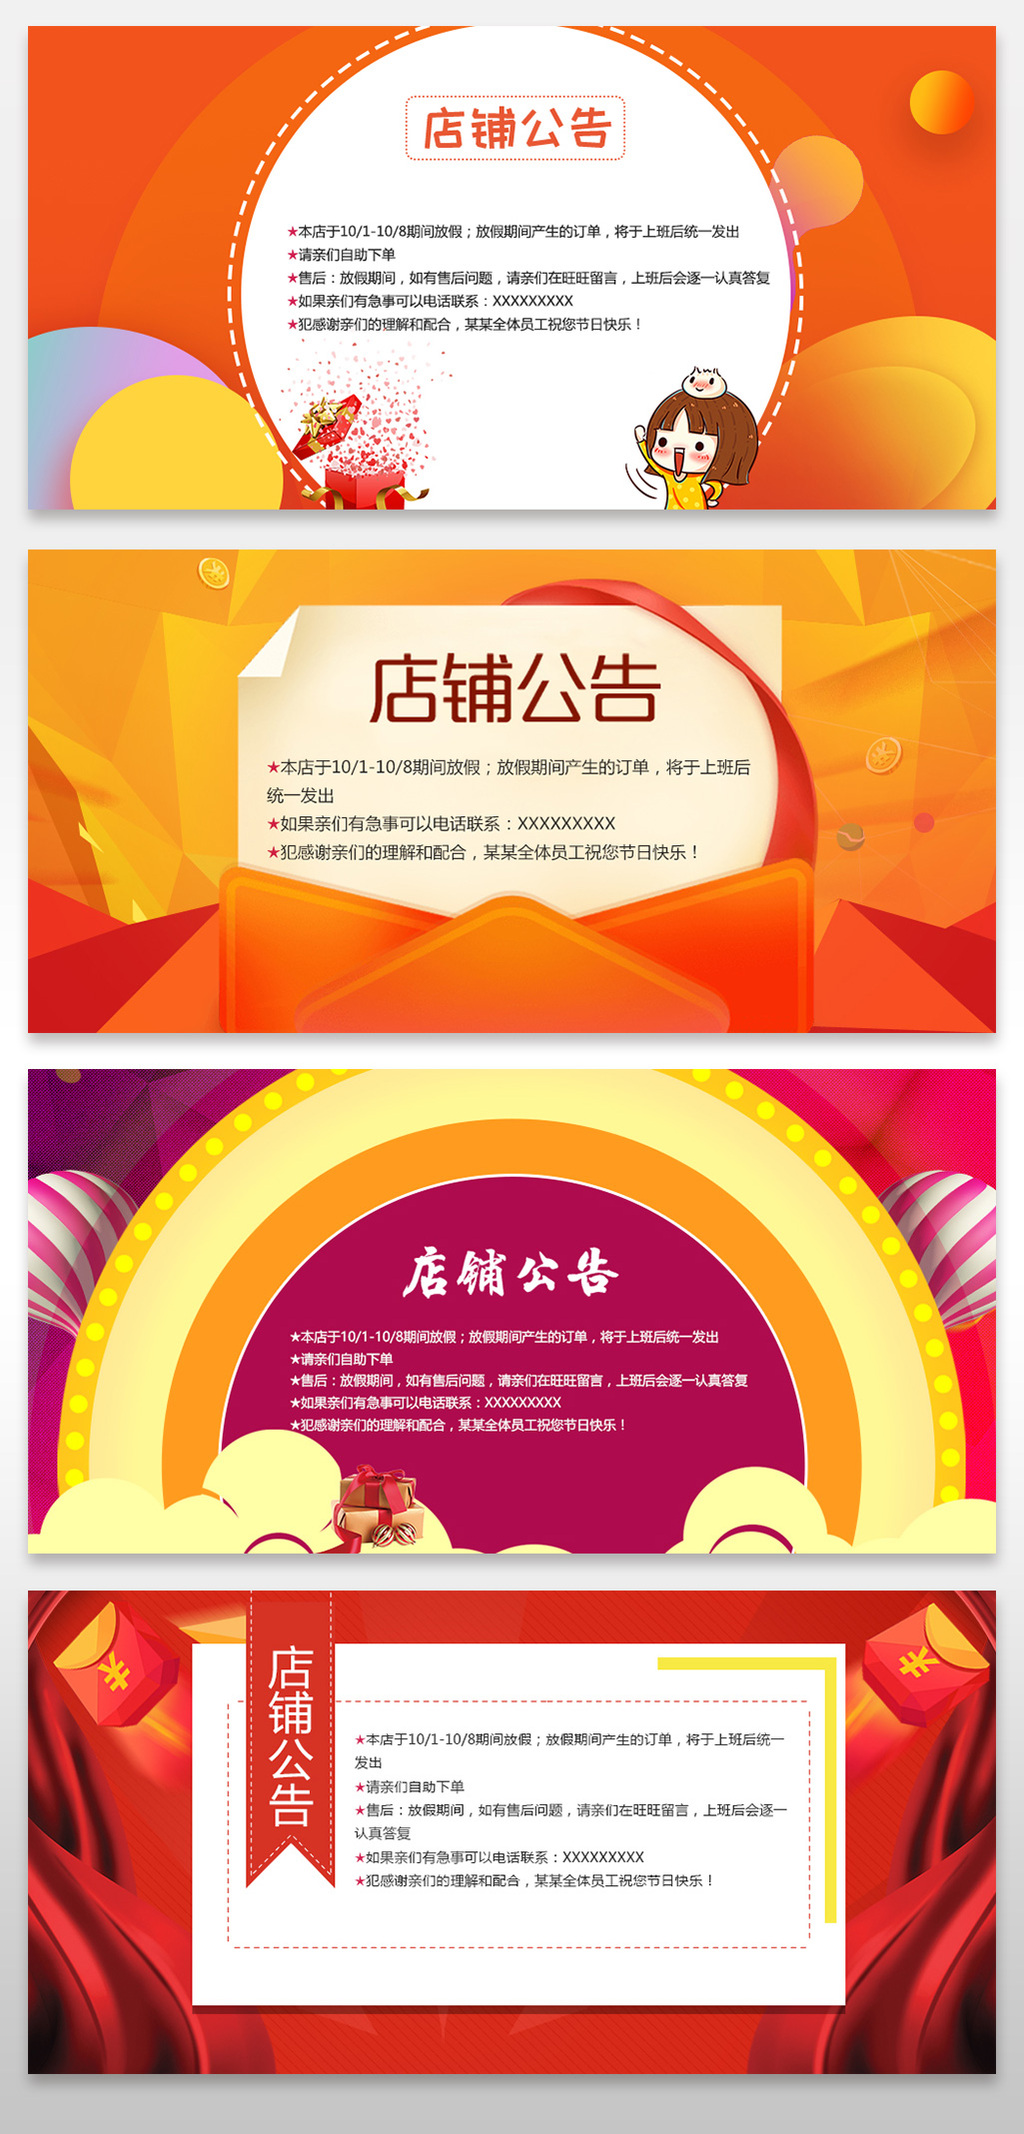 淘宝天猫春节放假公告通知海报图片